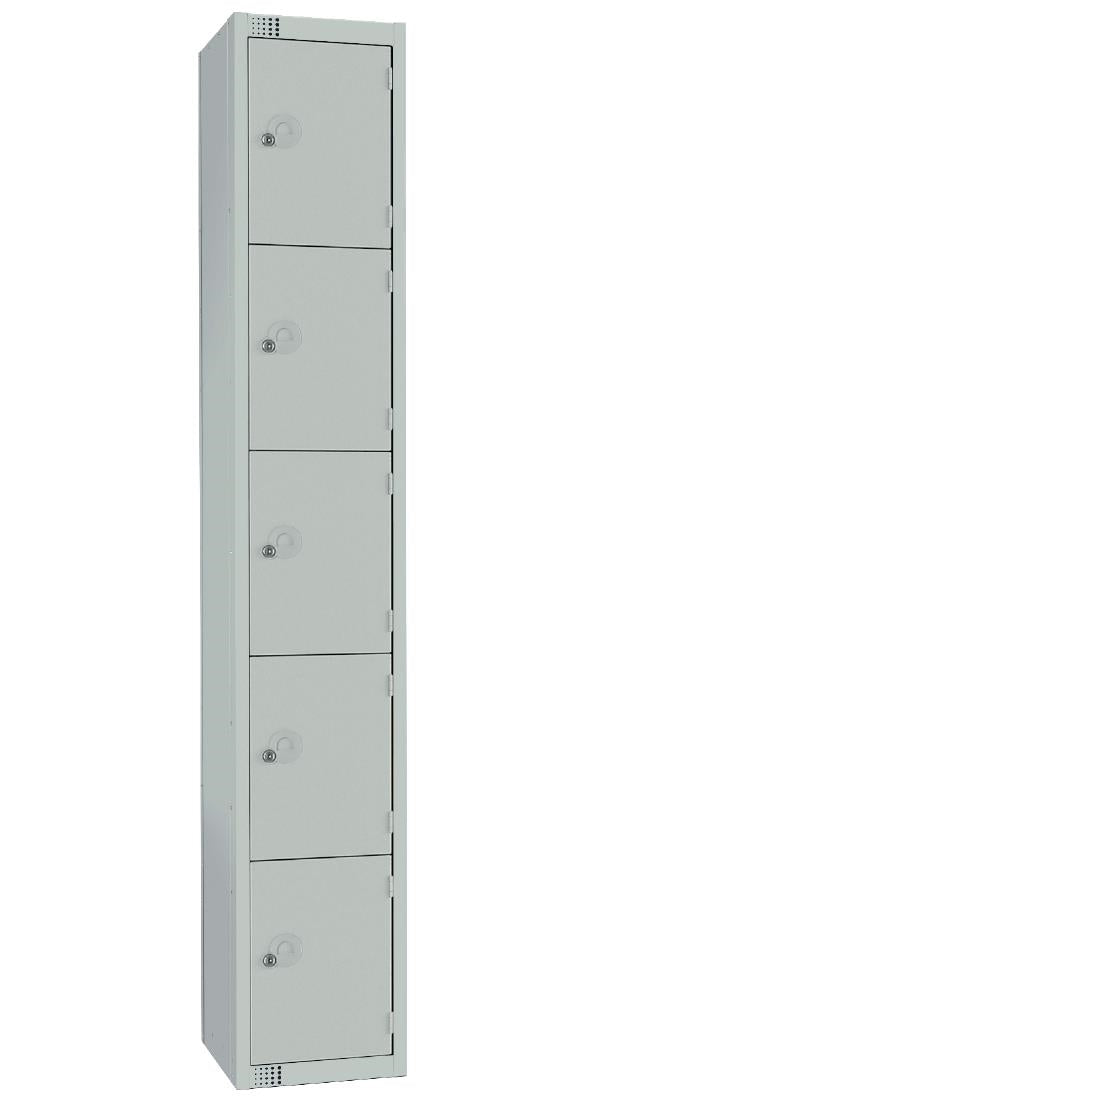 CG615-ELS Elite Five Door Electronic Combination Locker with Sloping Top Grey JD Catering Equipment Solutions Ltd